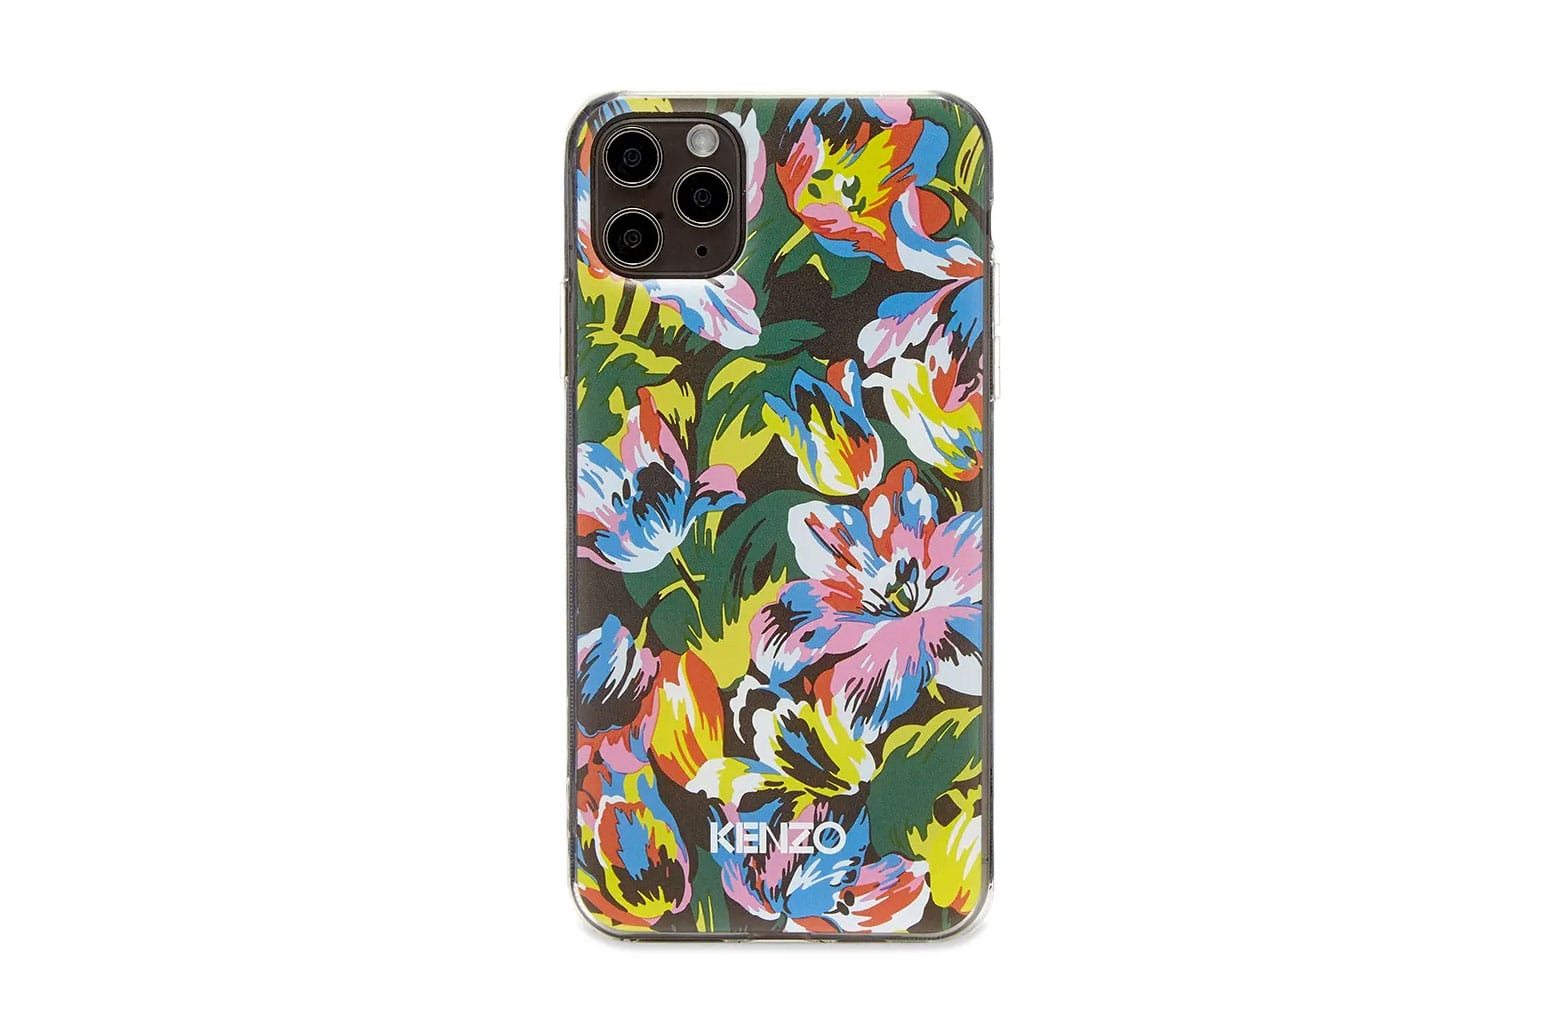 kenzo iphone 6 case